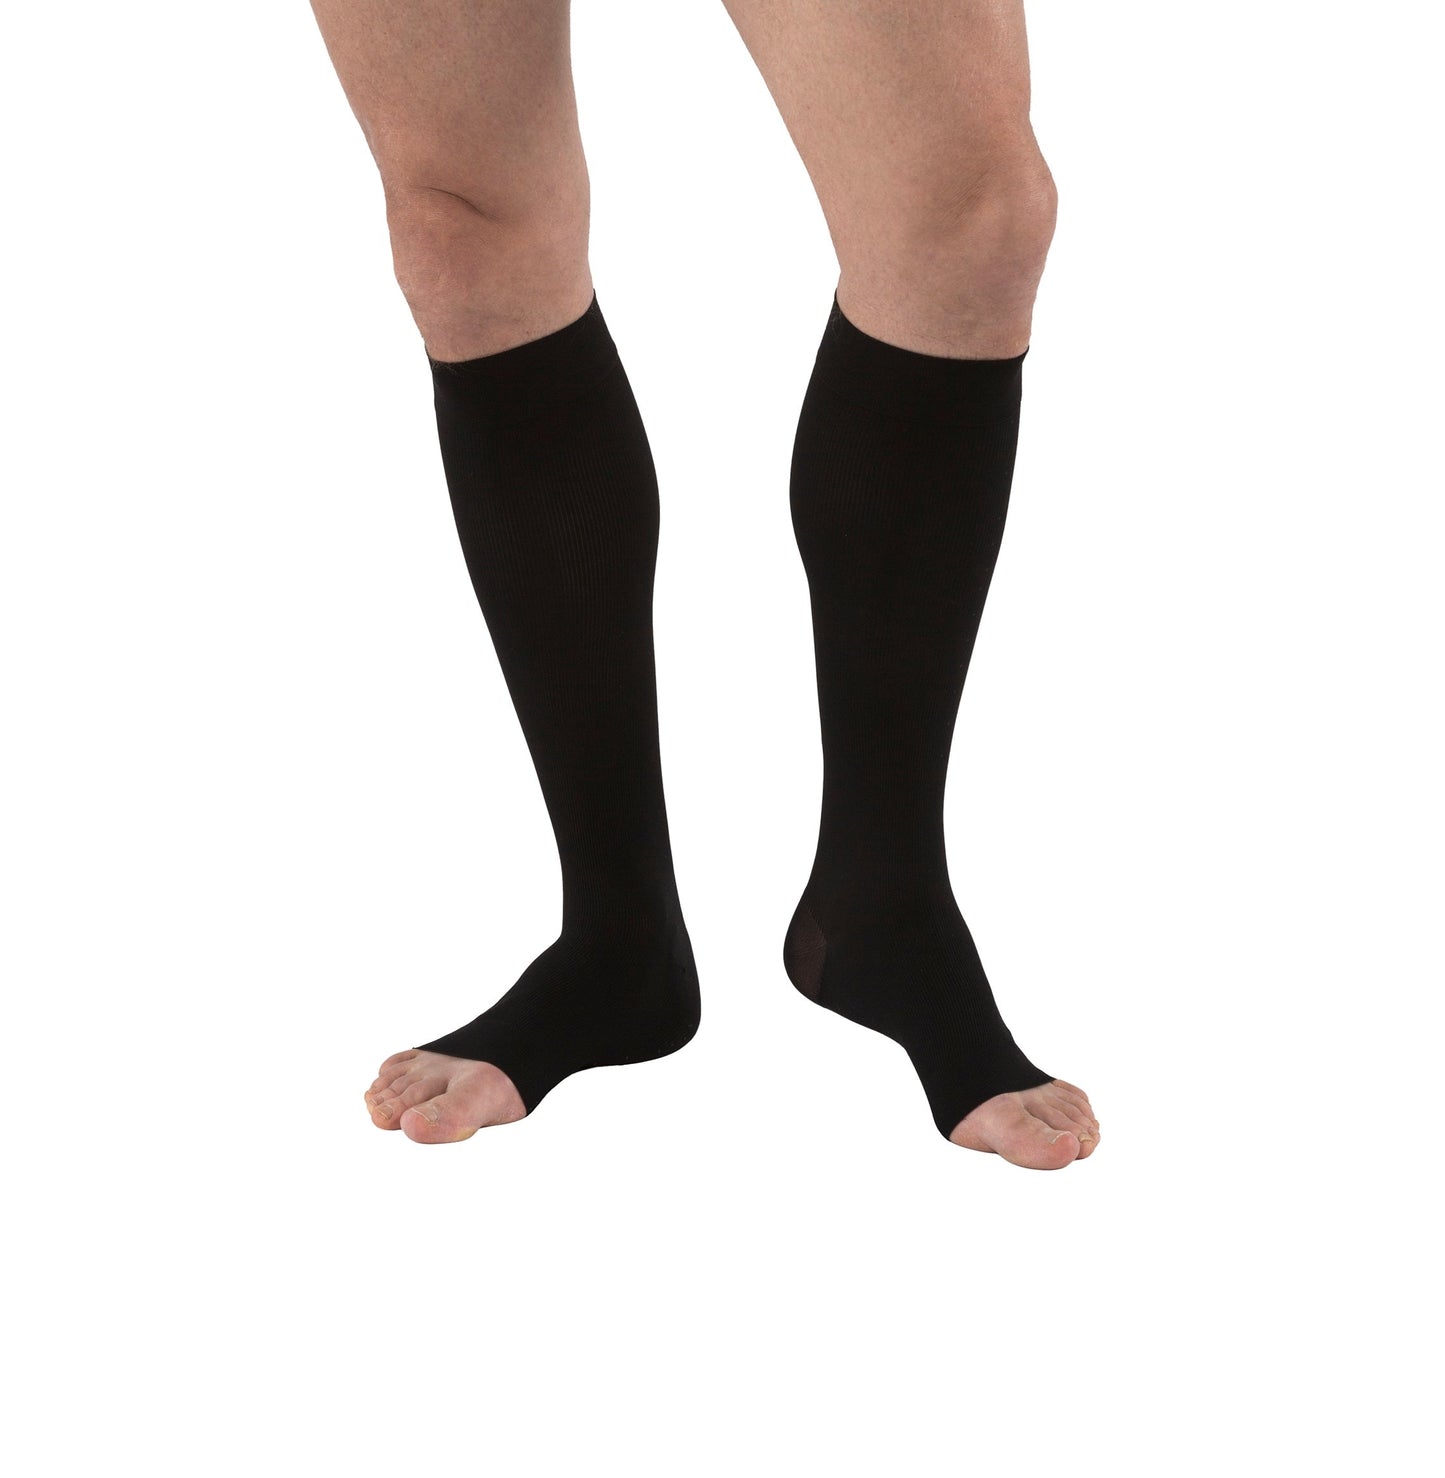 JOBST forMen Compression Socks 30-40 mmHg Knee High, Full Calf Open Toe